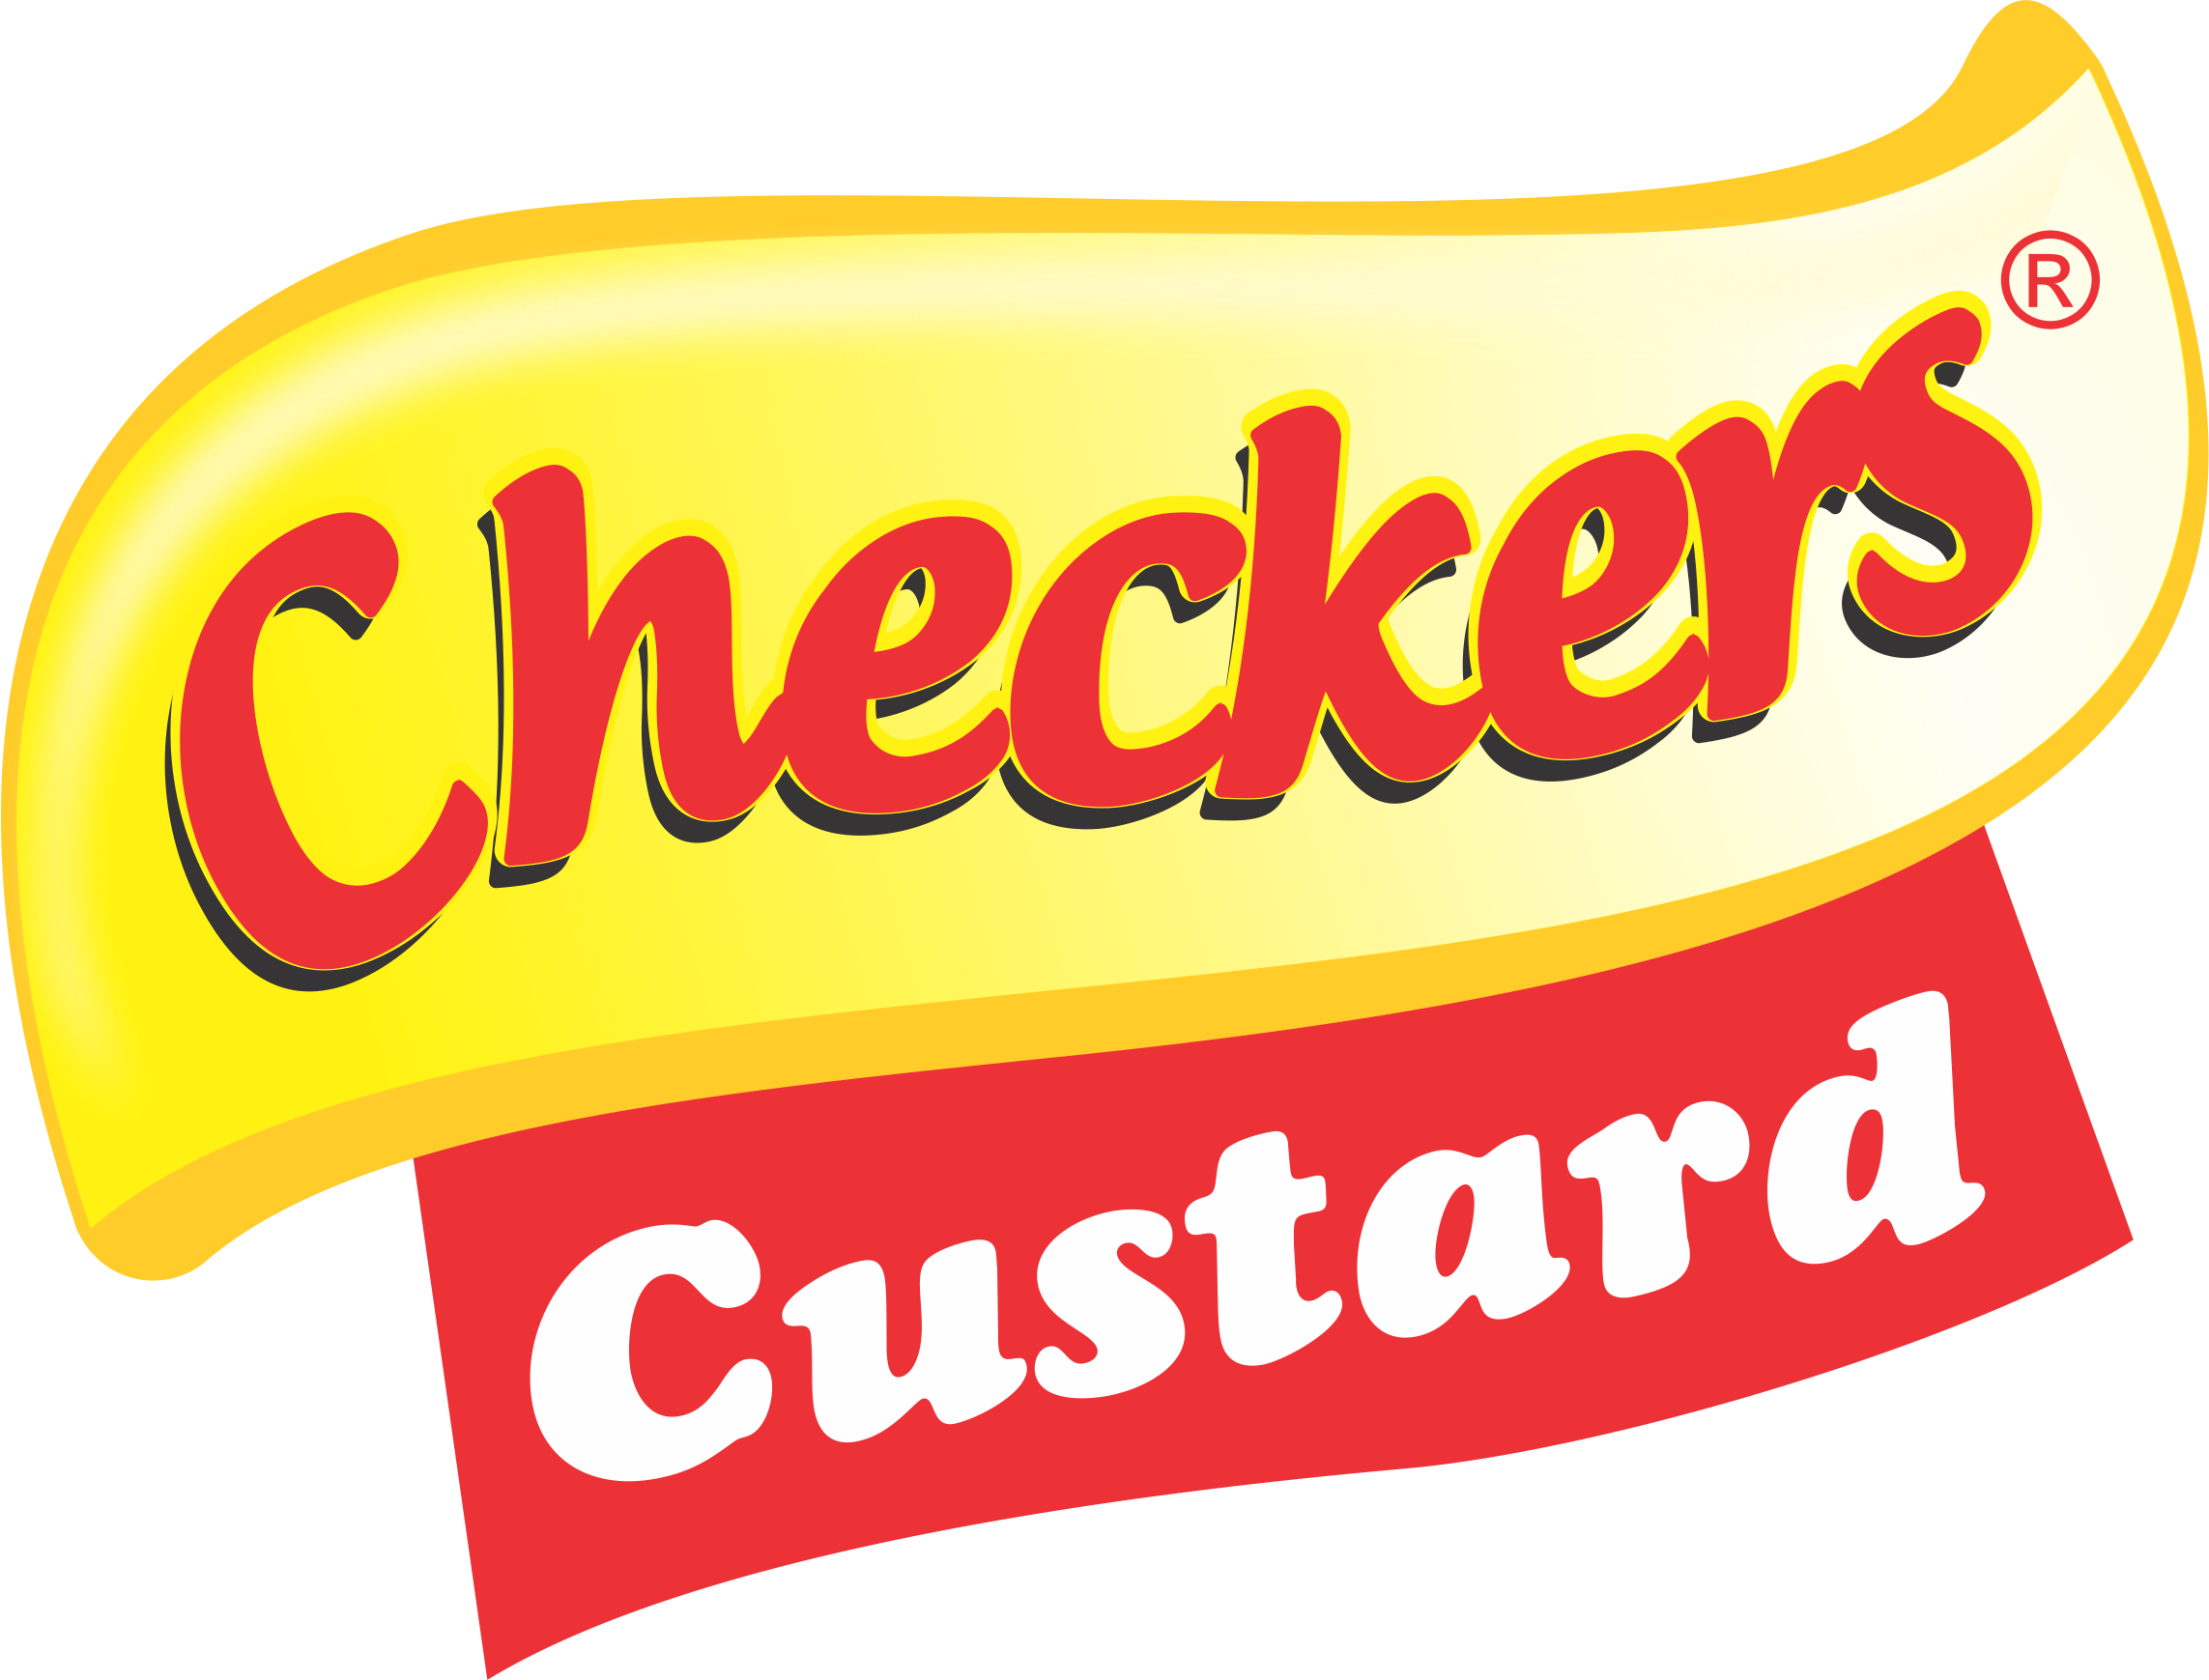 Checkers Custard – checkers.ng